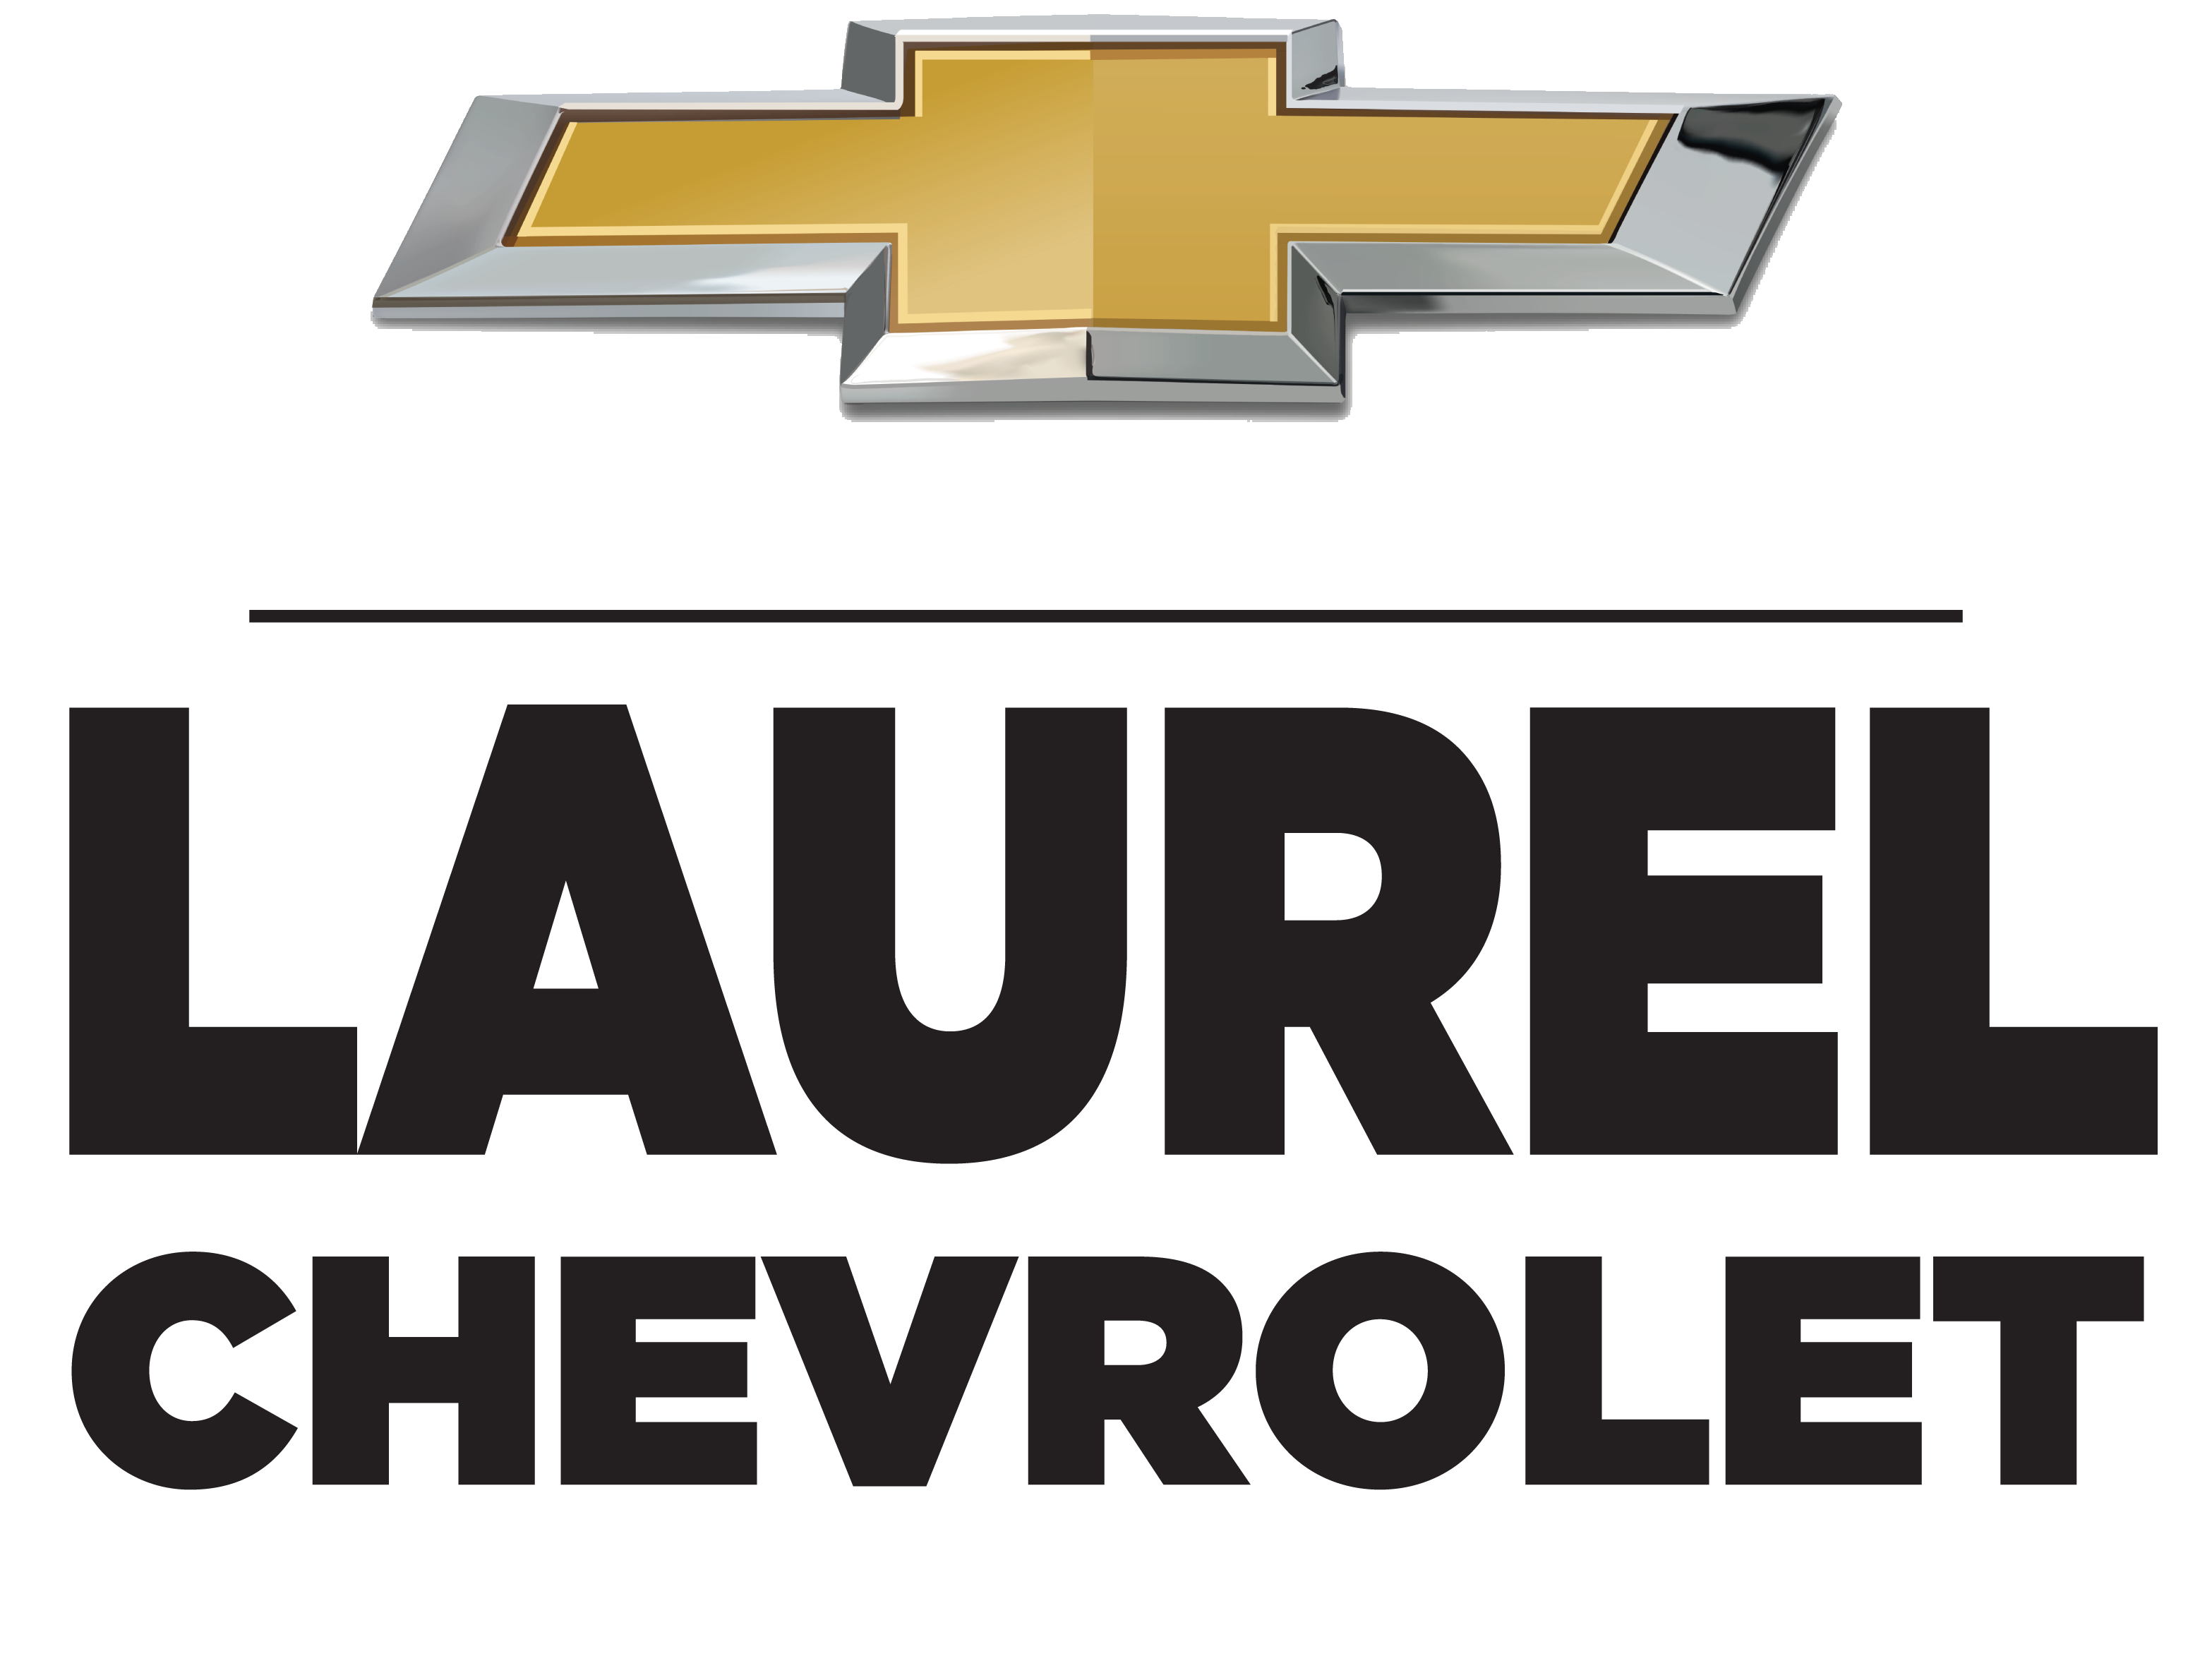 Laurel Chevrolet Protection Plans